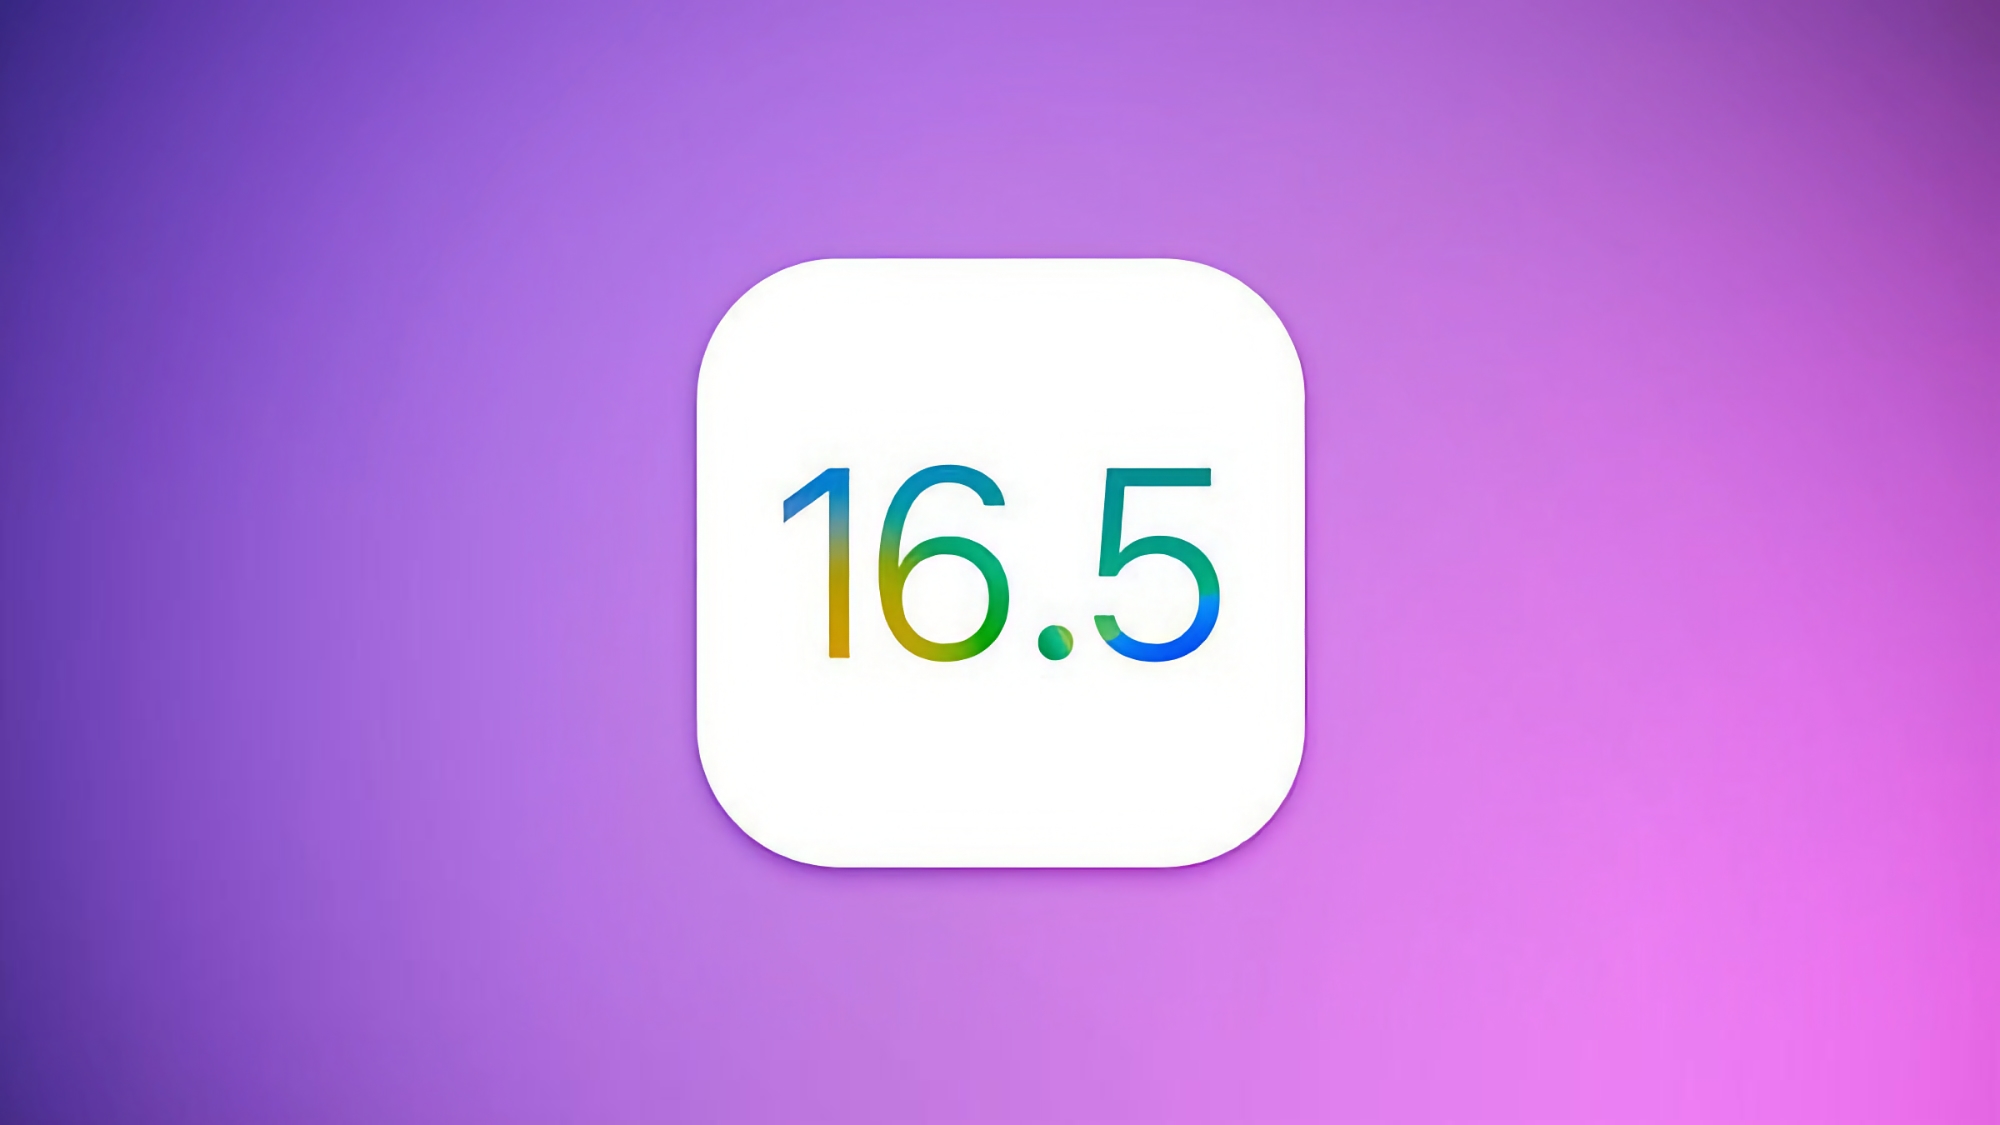 Apple wydaje stabilną wersję iOS 16.5: co nowego i kiedy można spodziewać się oprogramowania?